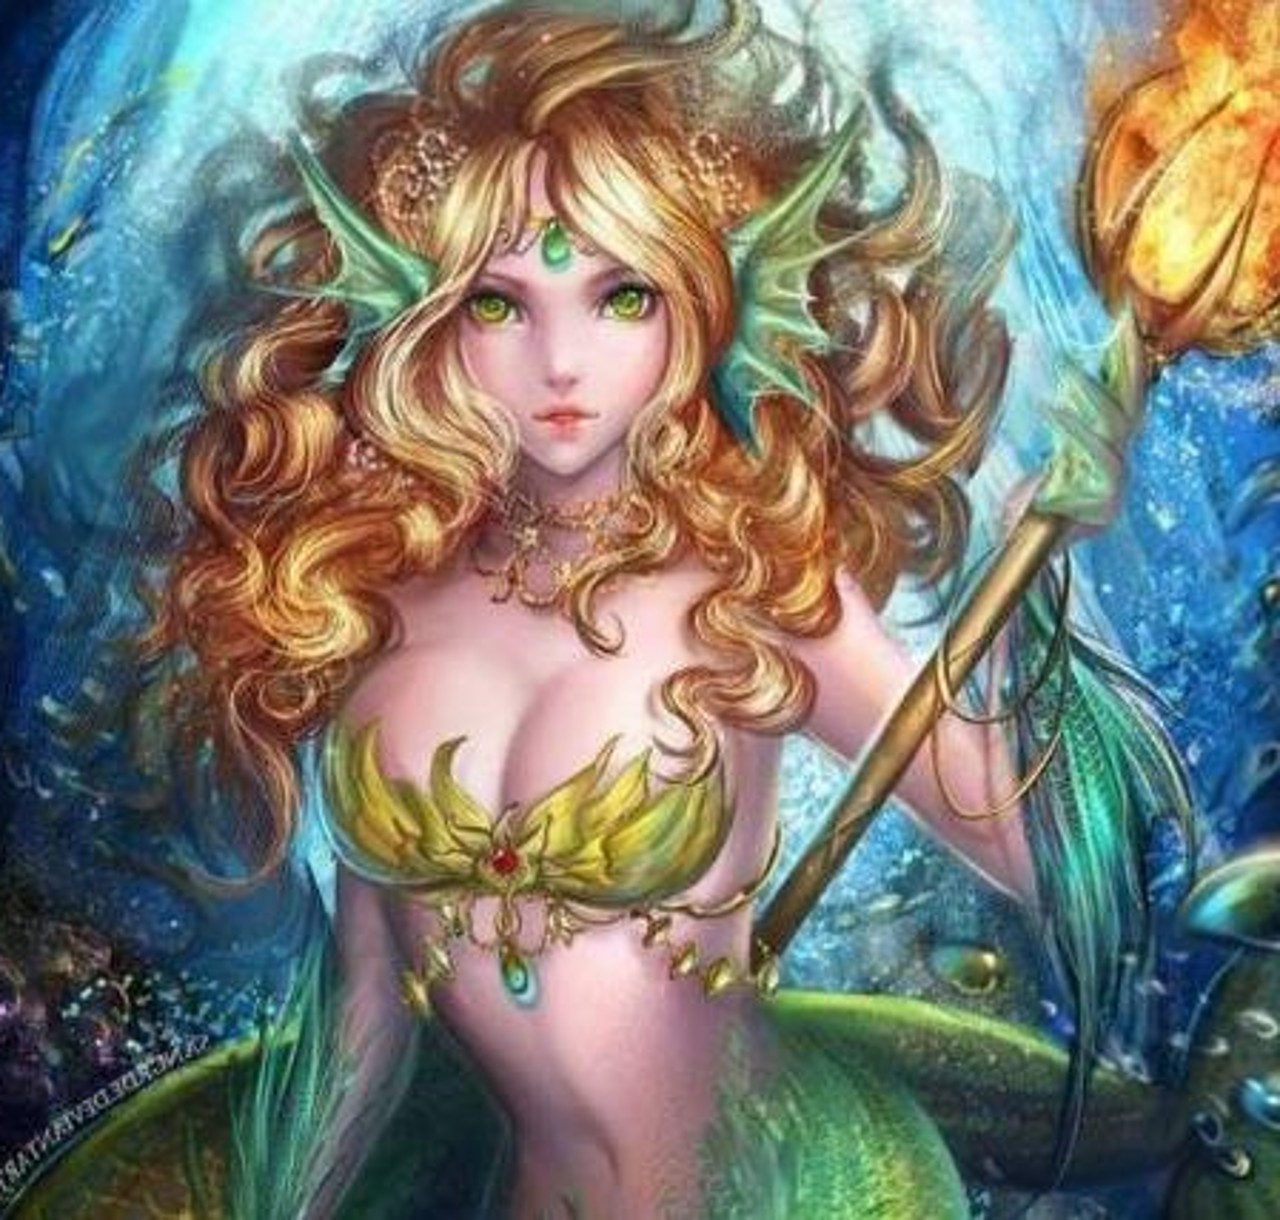 双鱼座化身美人鱼公主:一个棕色头发的美人鱼公主,趴在水里的石头上